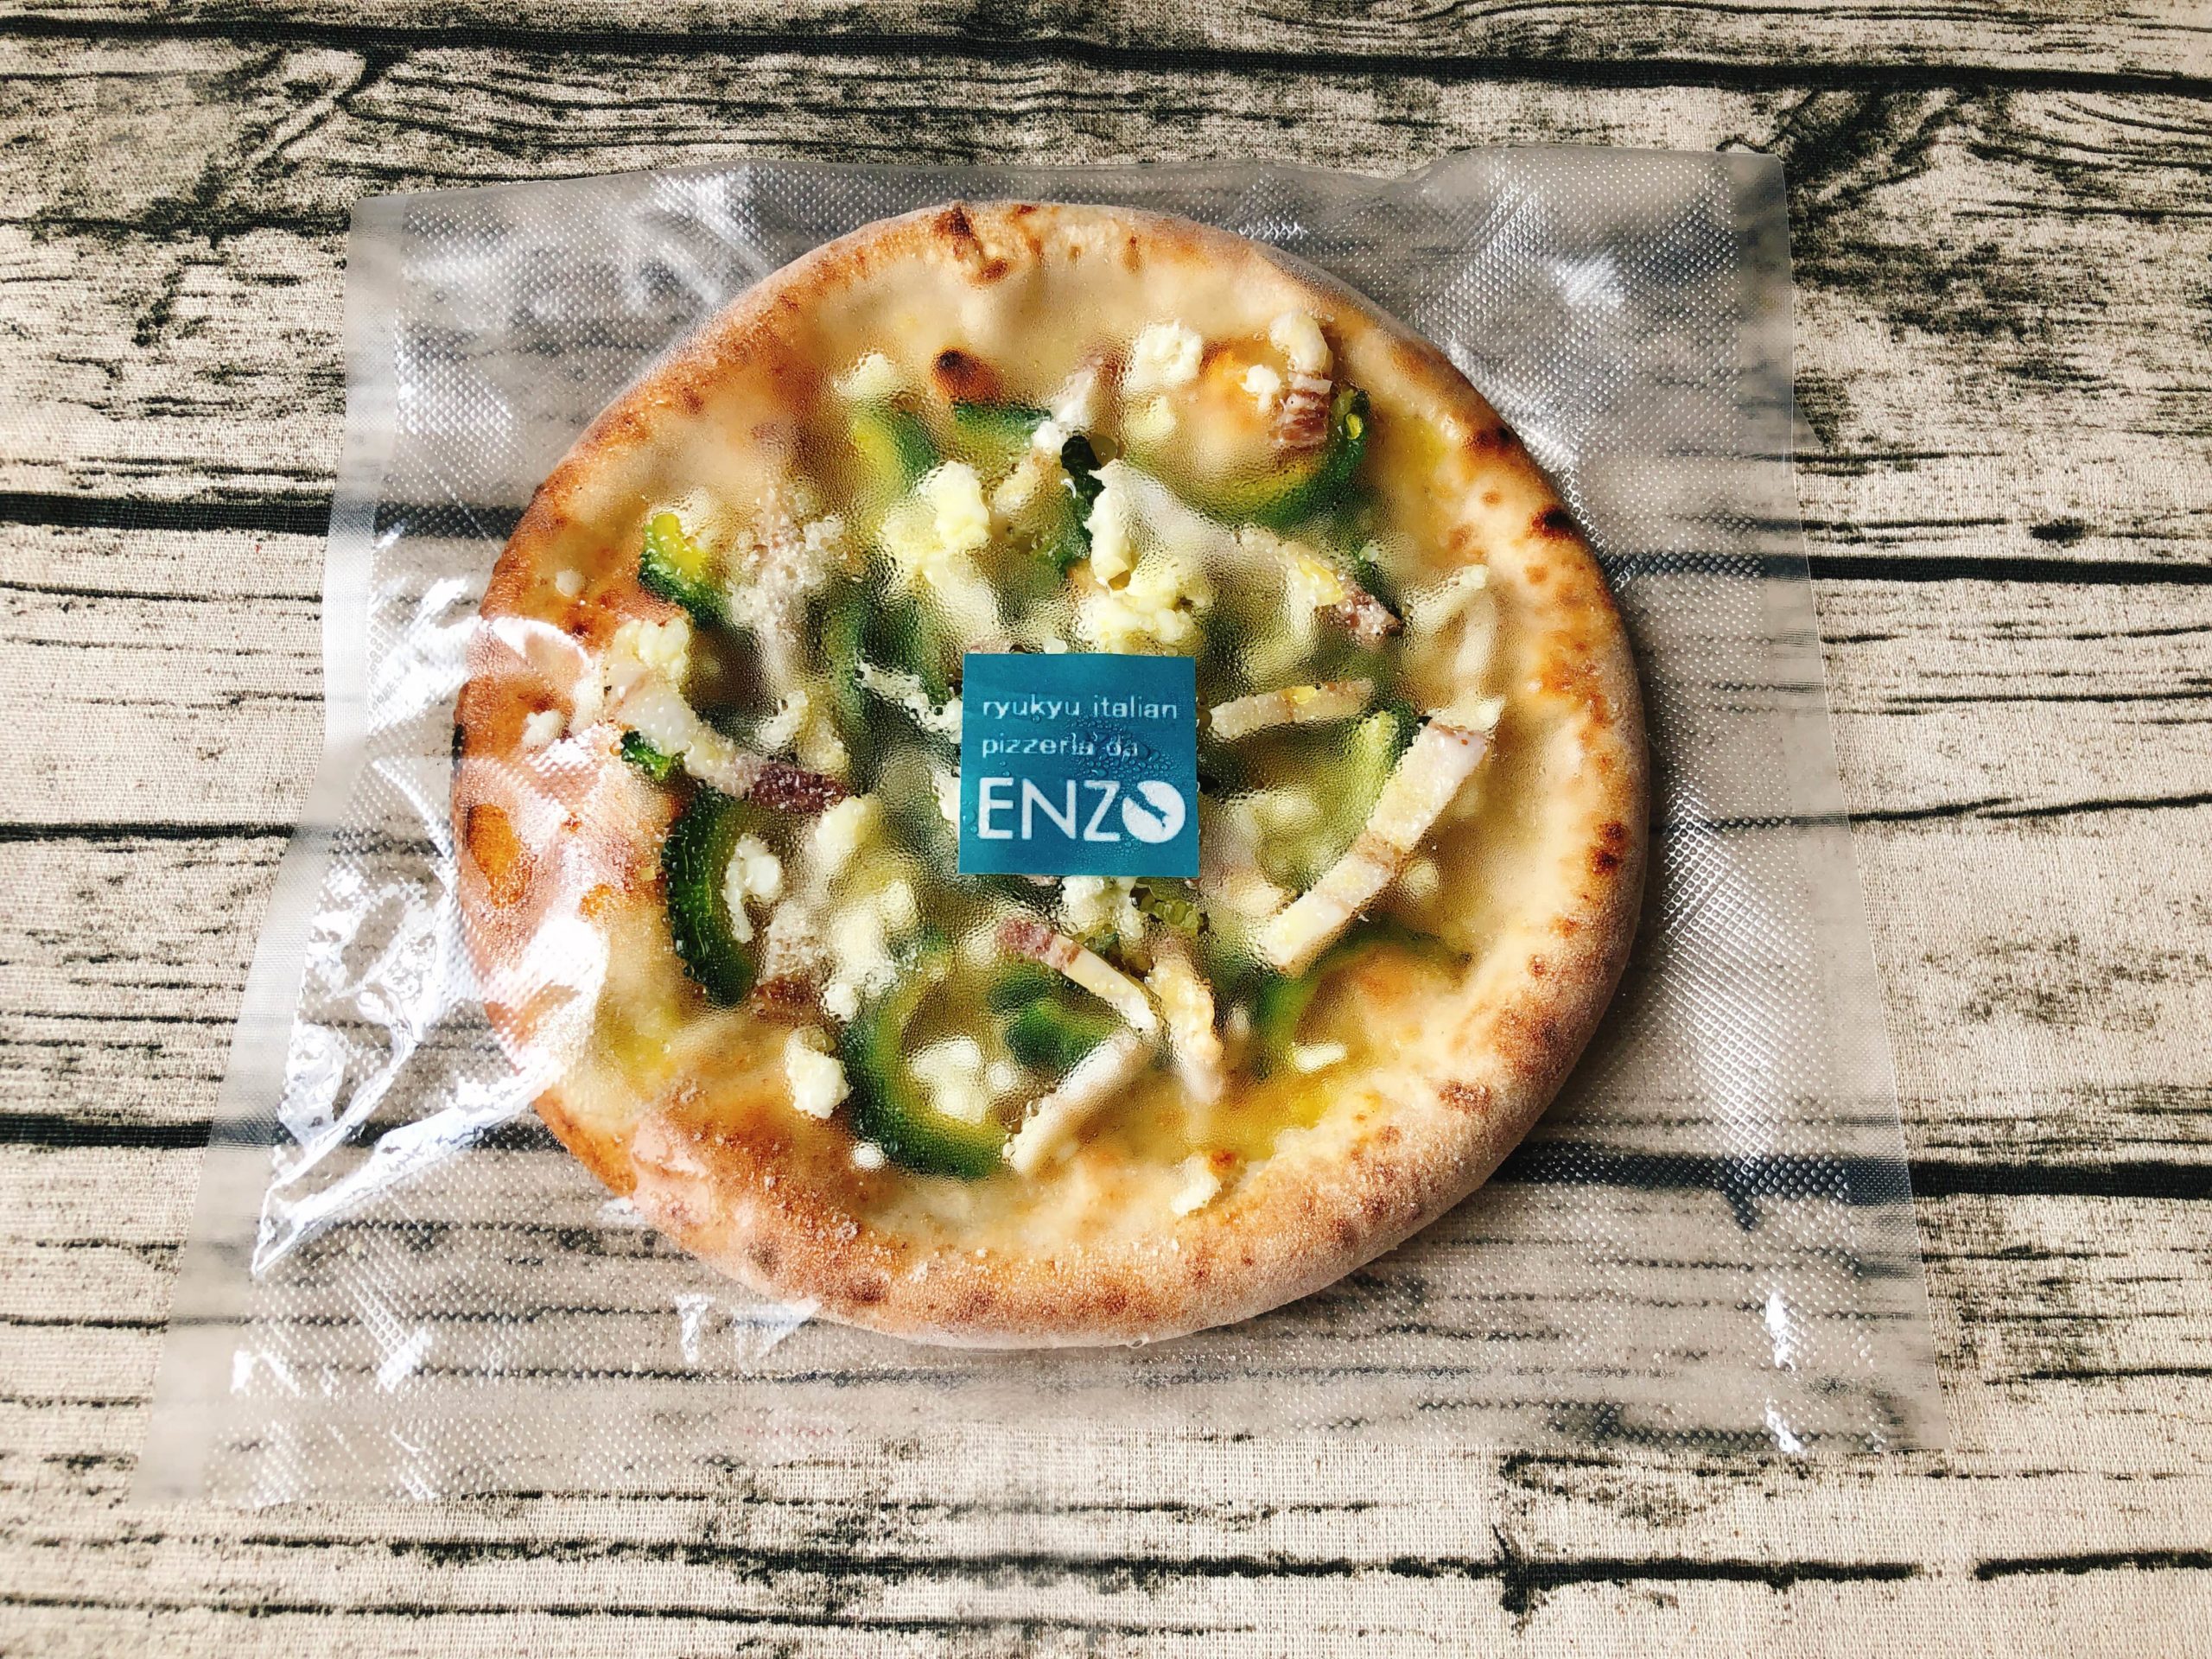 Pizzeria da ENZOの冷凍ピザ「ゴーヤチャンプルのピッツァ」冷凍状態